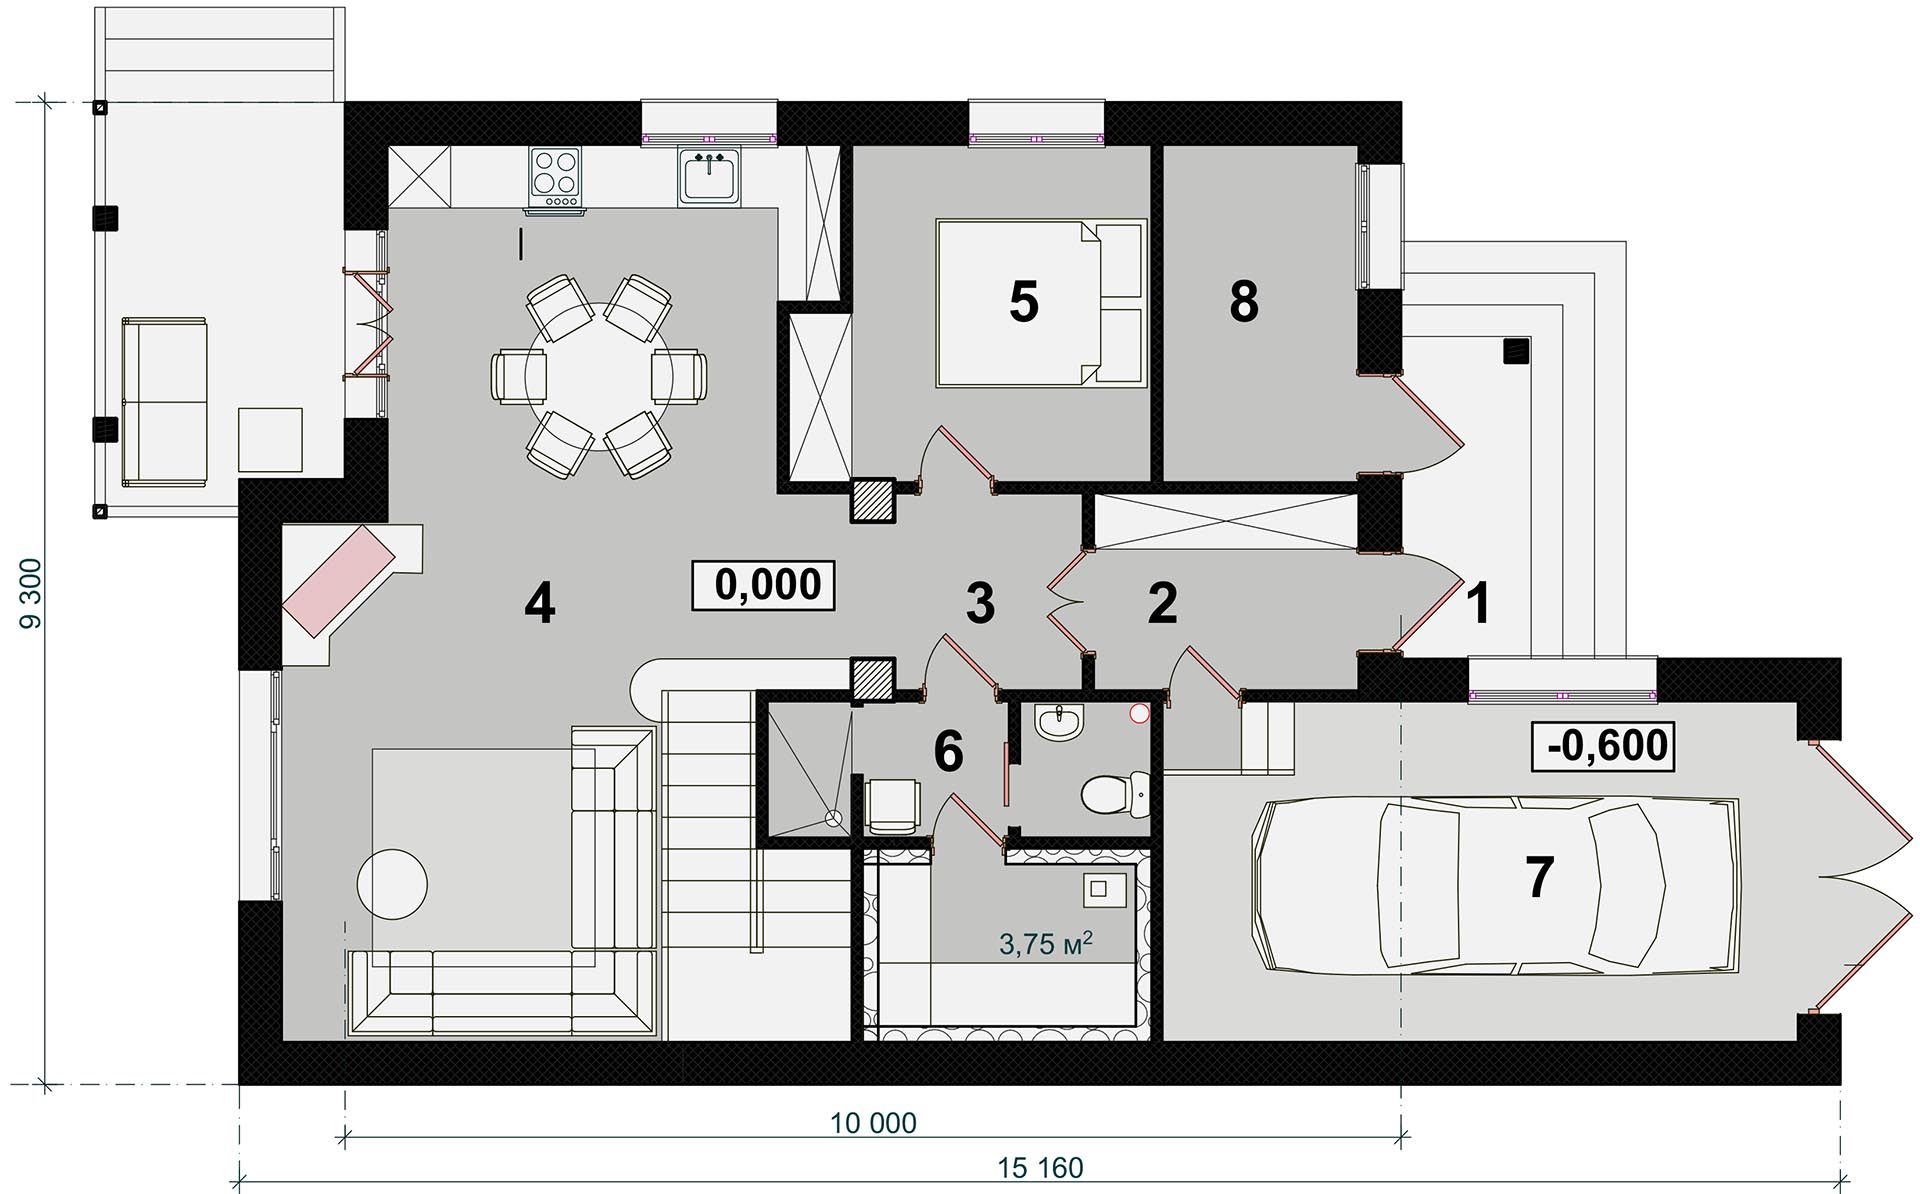 ПОВОЛЖЬЕ - план 1-го этажа дома с гаражом и сауной - готовый проект от Инваполис